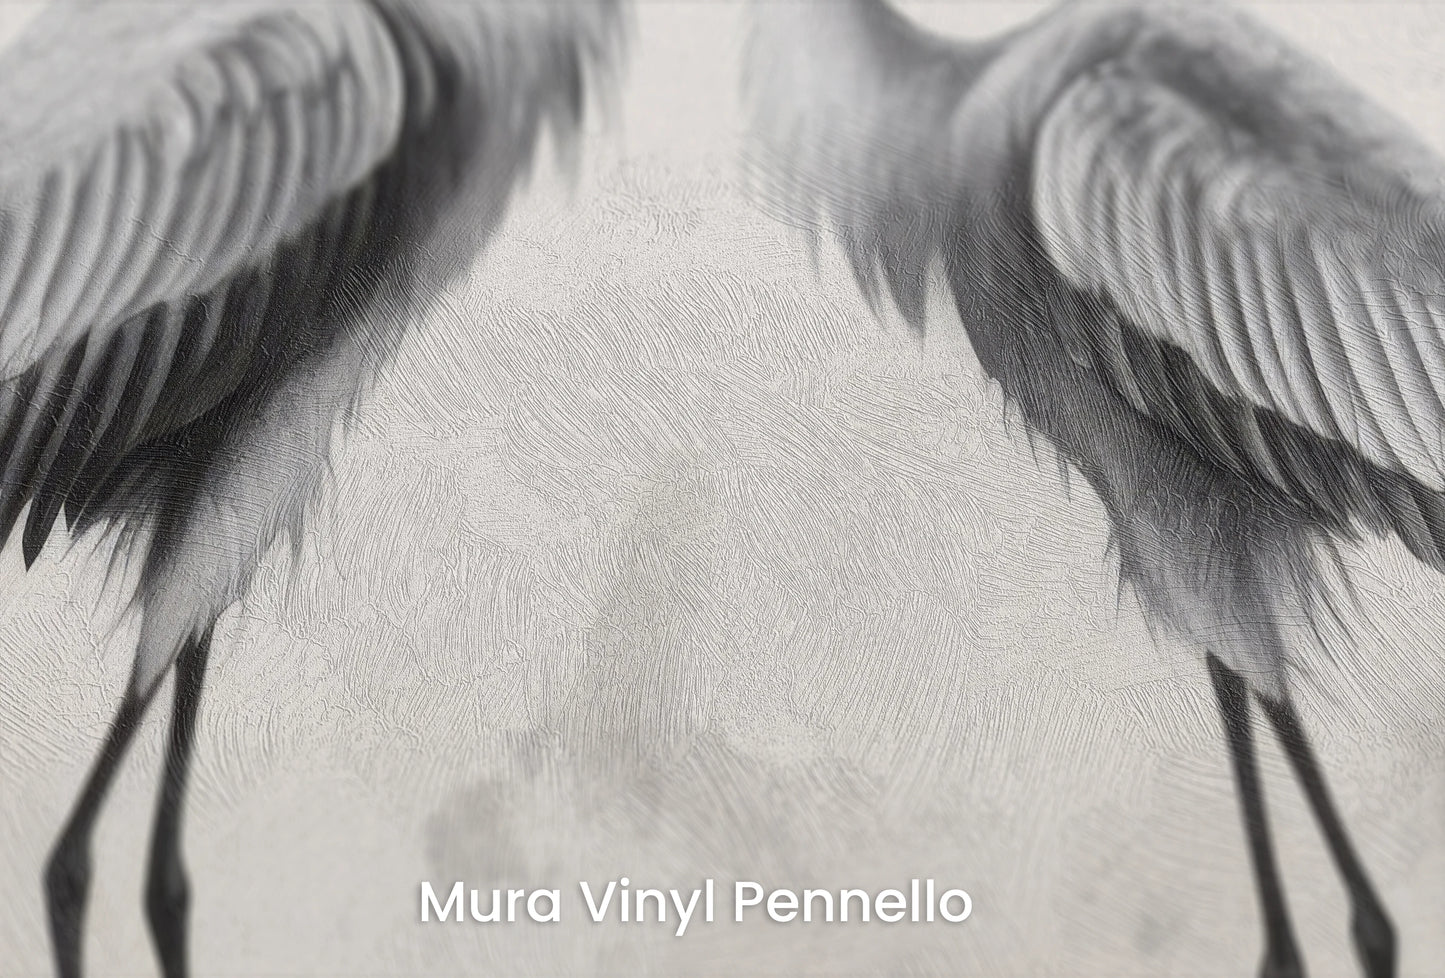 Zbliżenie na artystyczną fototapetę o nazwie Lunar Reflection na podłożu Mura Vinyl Pennello - faktura pociągnięć pędzla malarskiego.